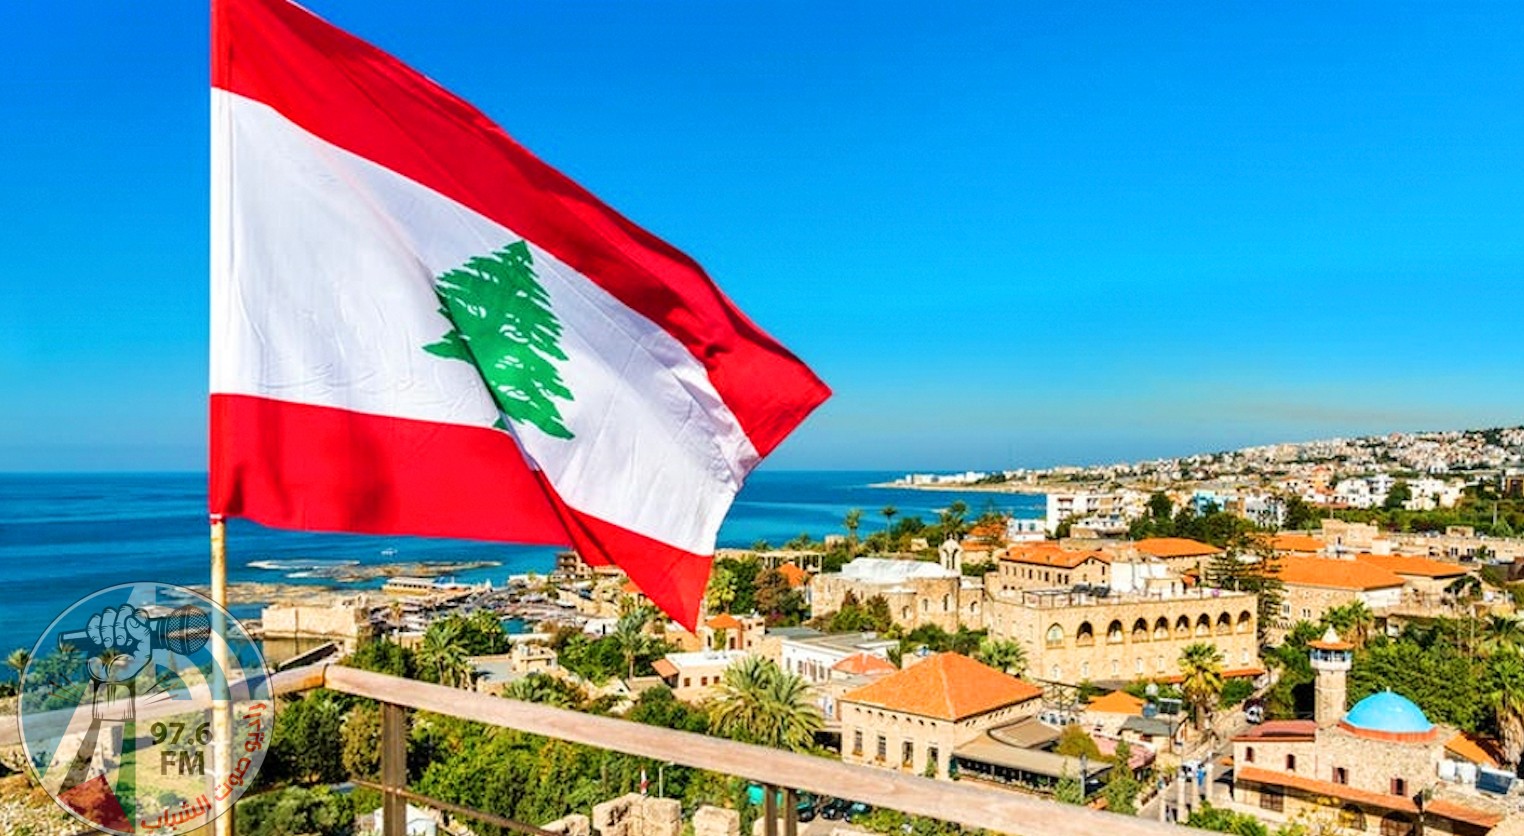 لبنان يحصل على أكثر من مليار دولار من صندوق النقد الدولي